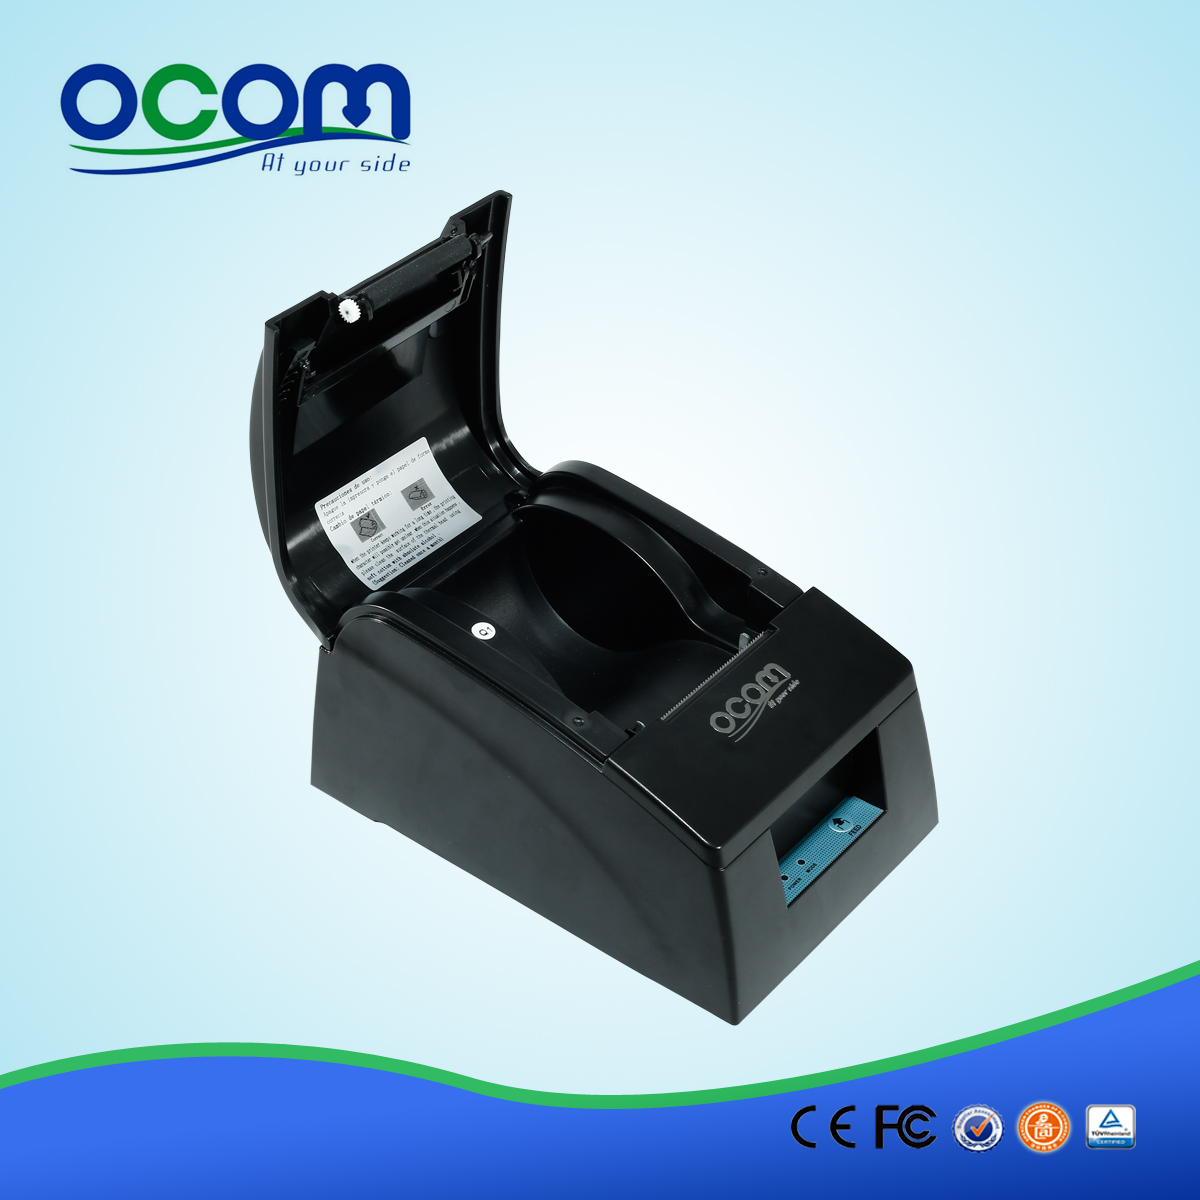 58毫米安卓热敏收据打印机-- OCPP-586